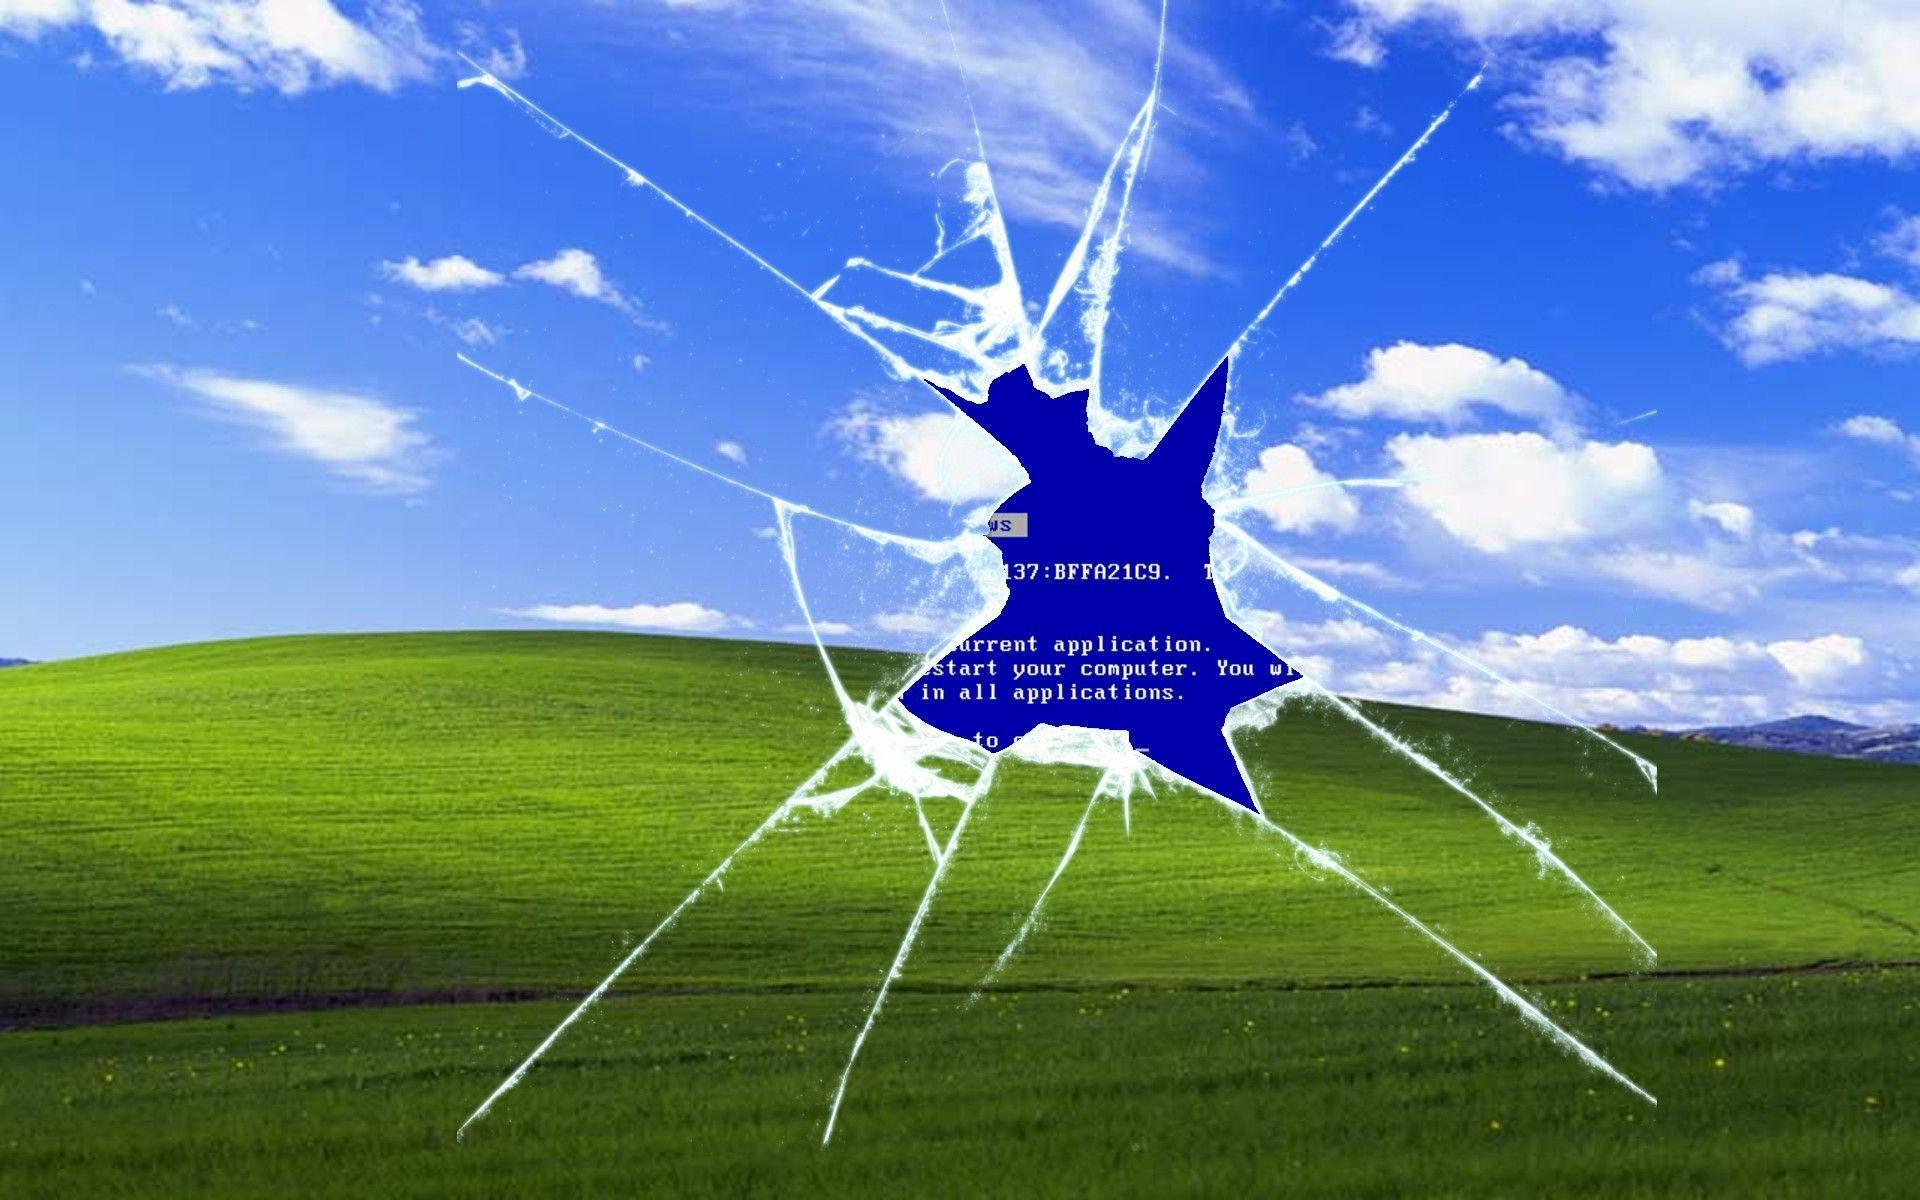 Windows XP is dead. Long live Windows XP 'Bliss': Digital